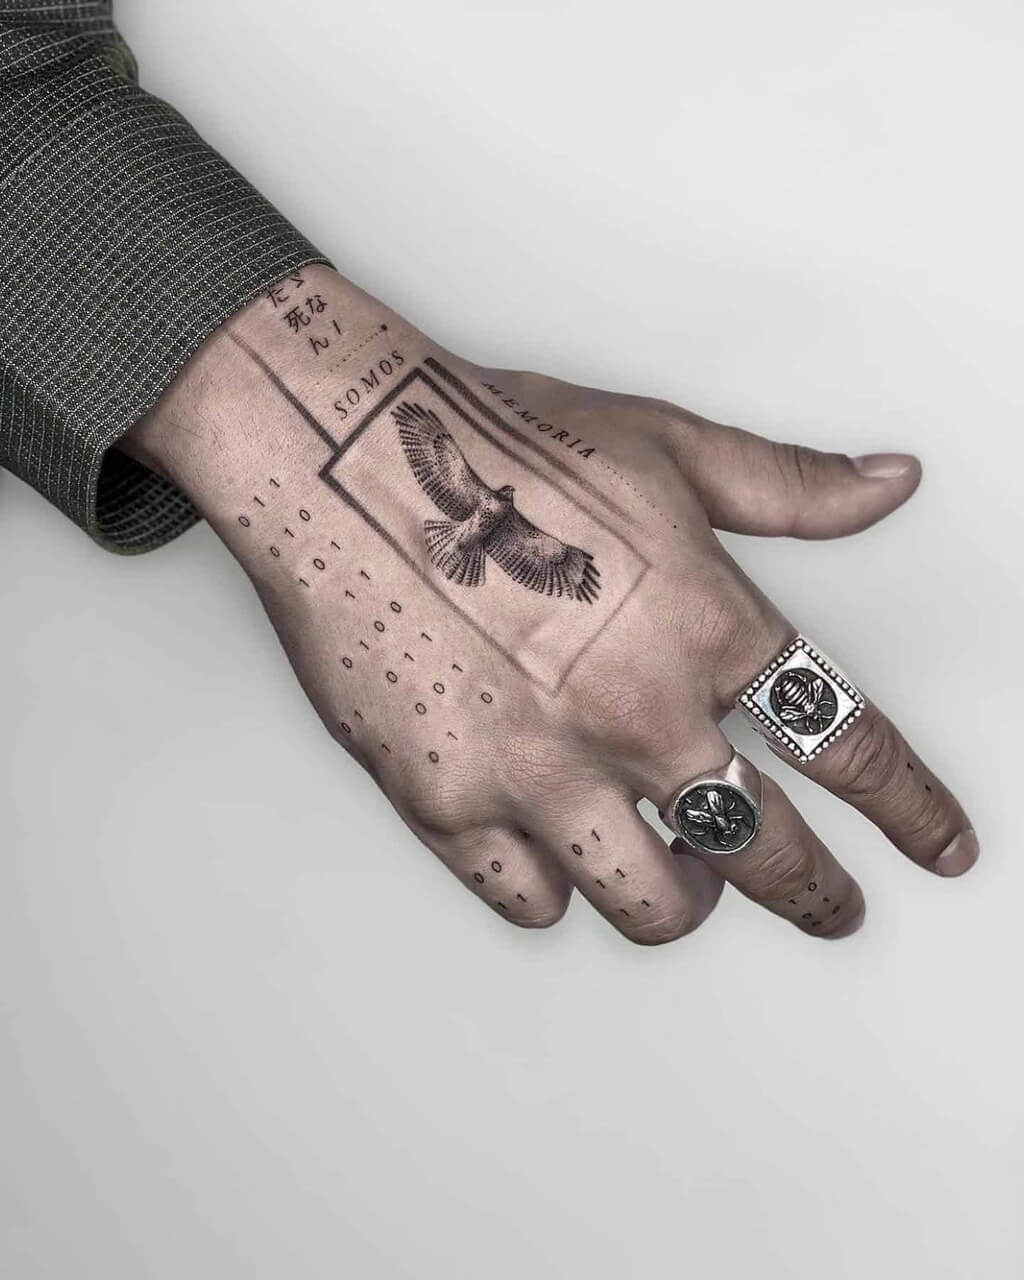 Unique Hand Tattoos for Men